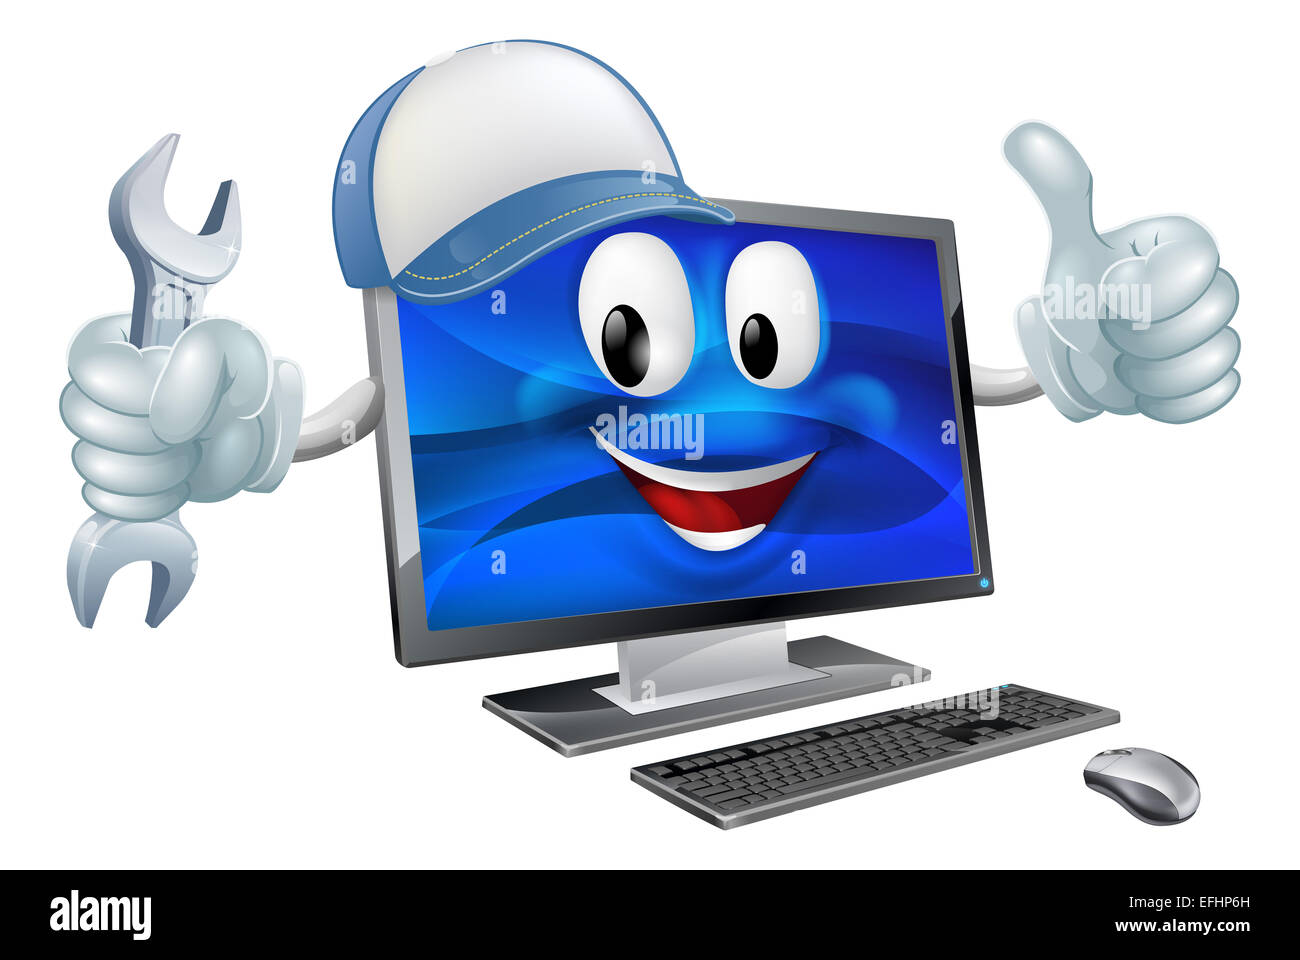 Un ordinateur charcter mascot portant une casquette de baseball et la tenue d'une clé tout en faisant un Thumbs up Banque D'Images